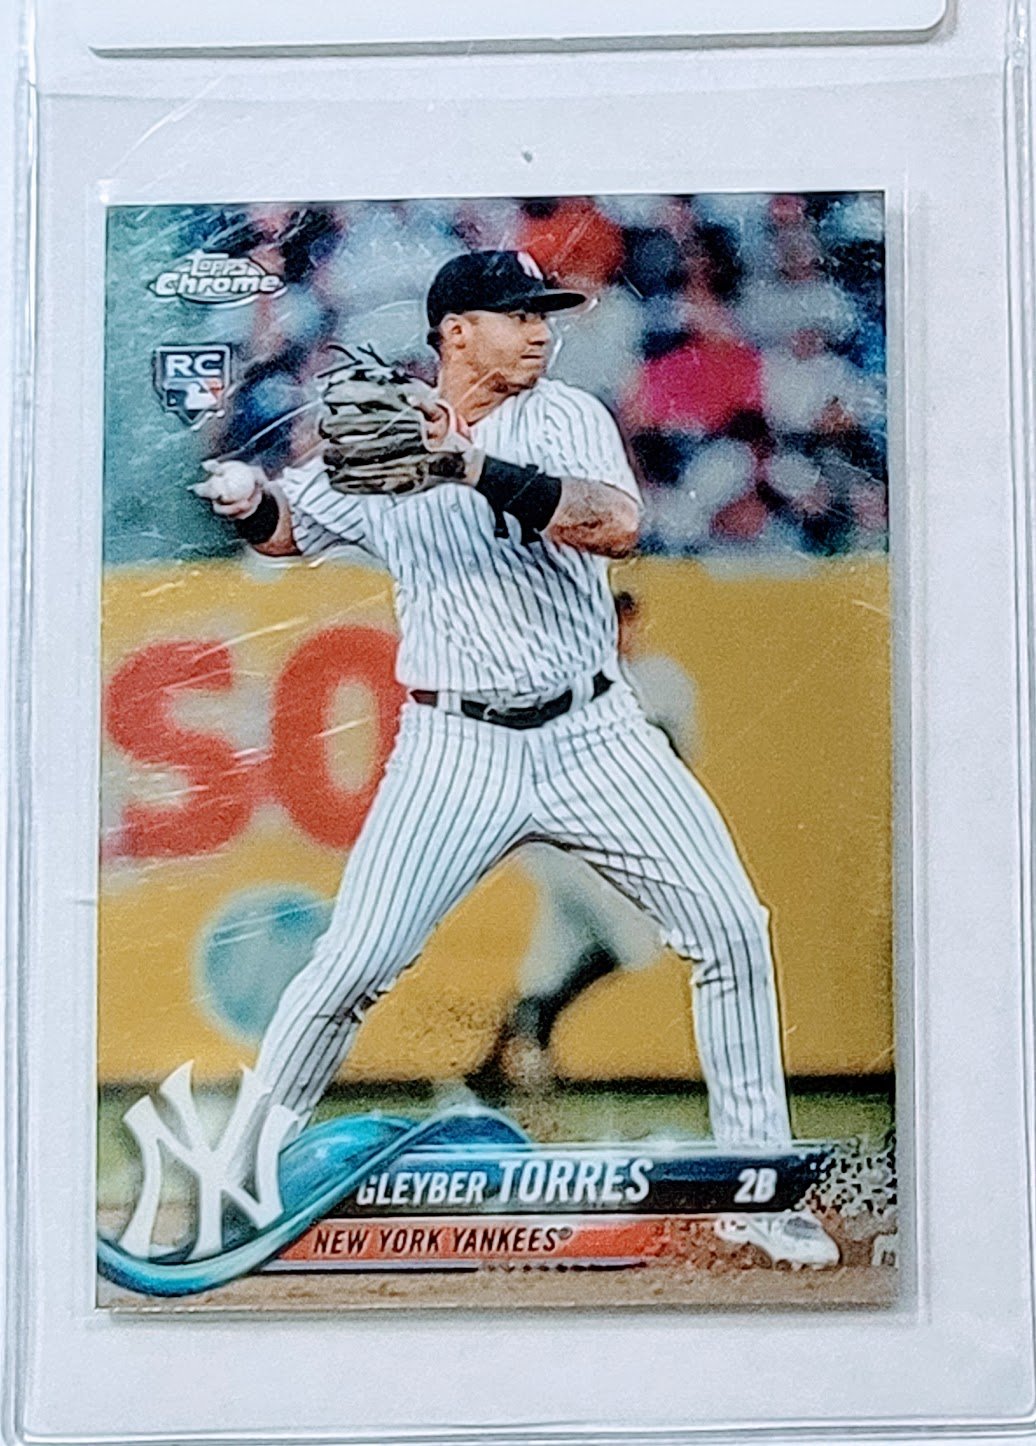 2018 Topps Chrome Update Gleyber Torres Rookie Baseball Trading Card T